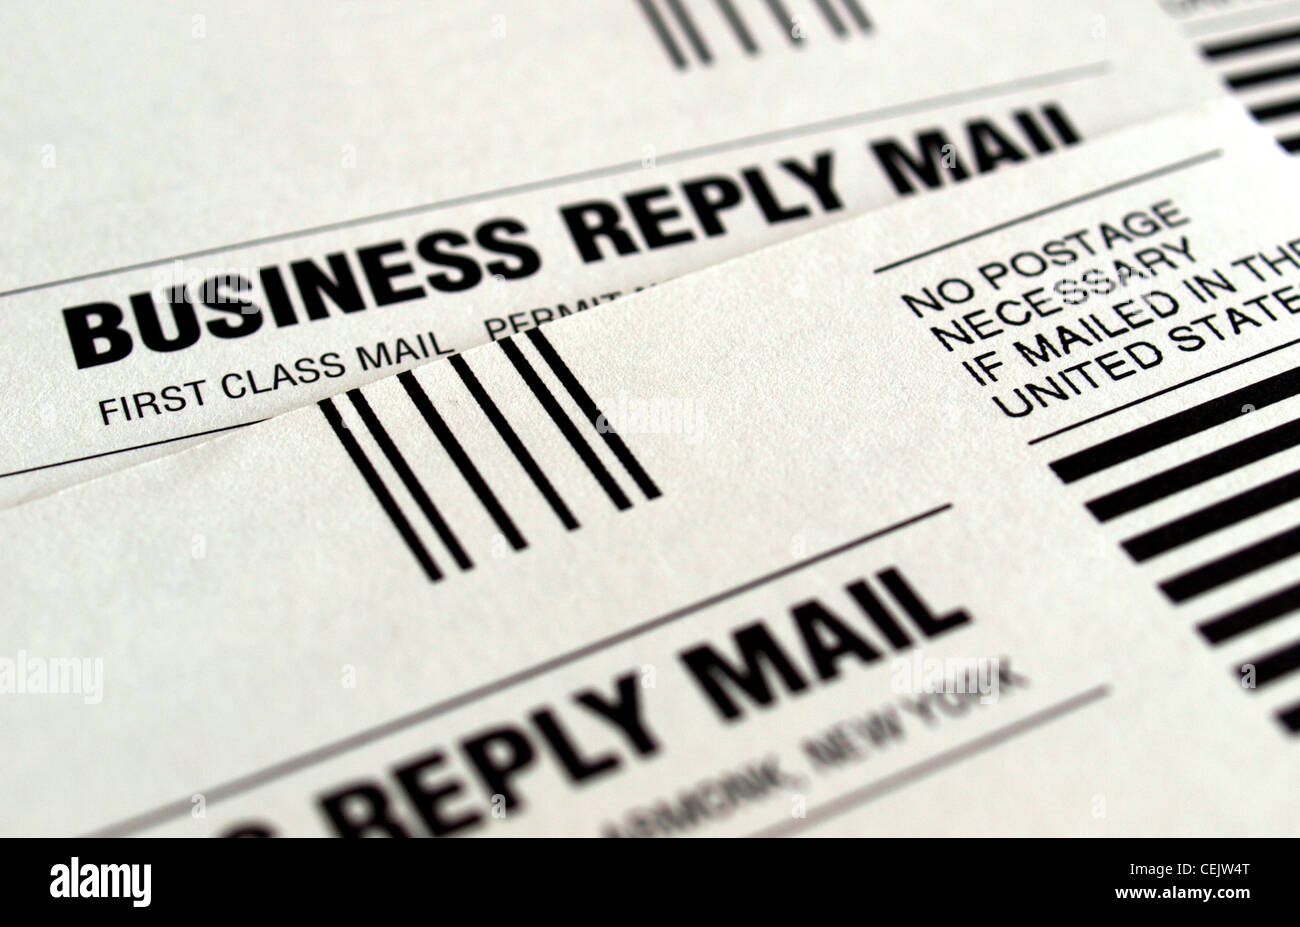 Dettaglio del business reply mail form Foto Stock